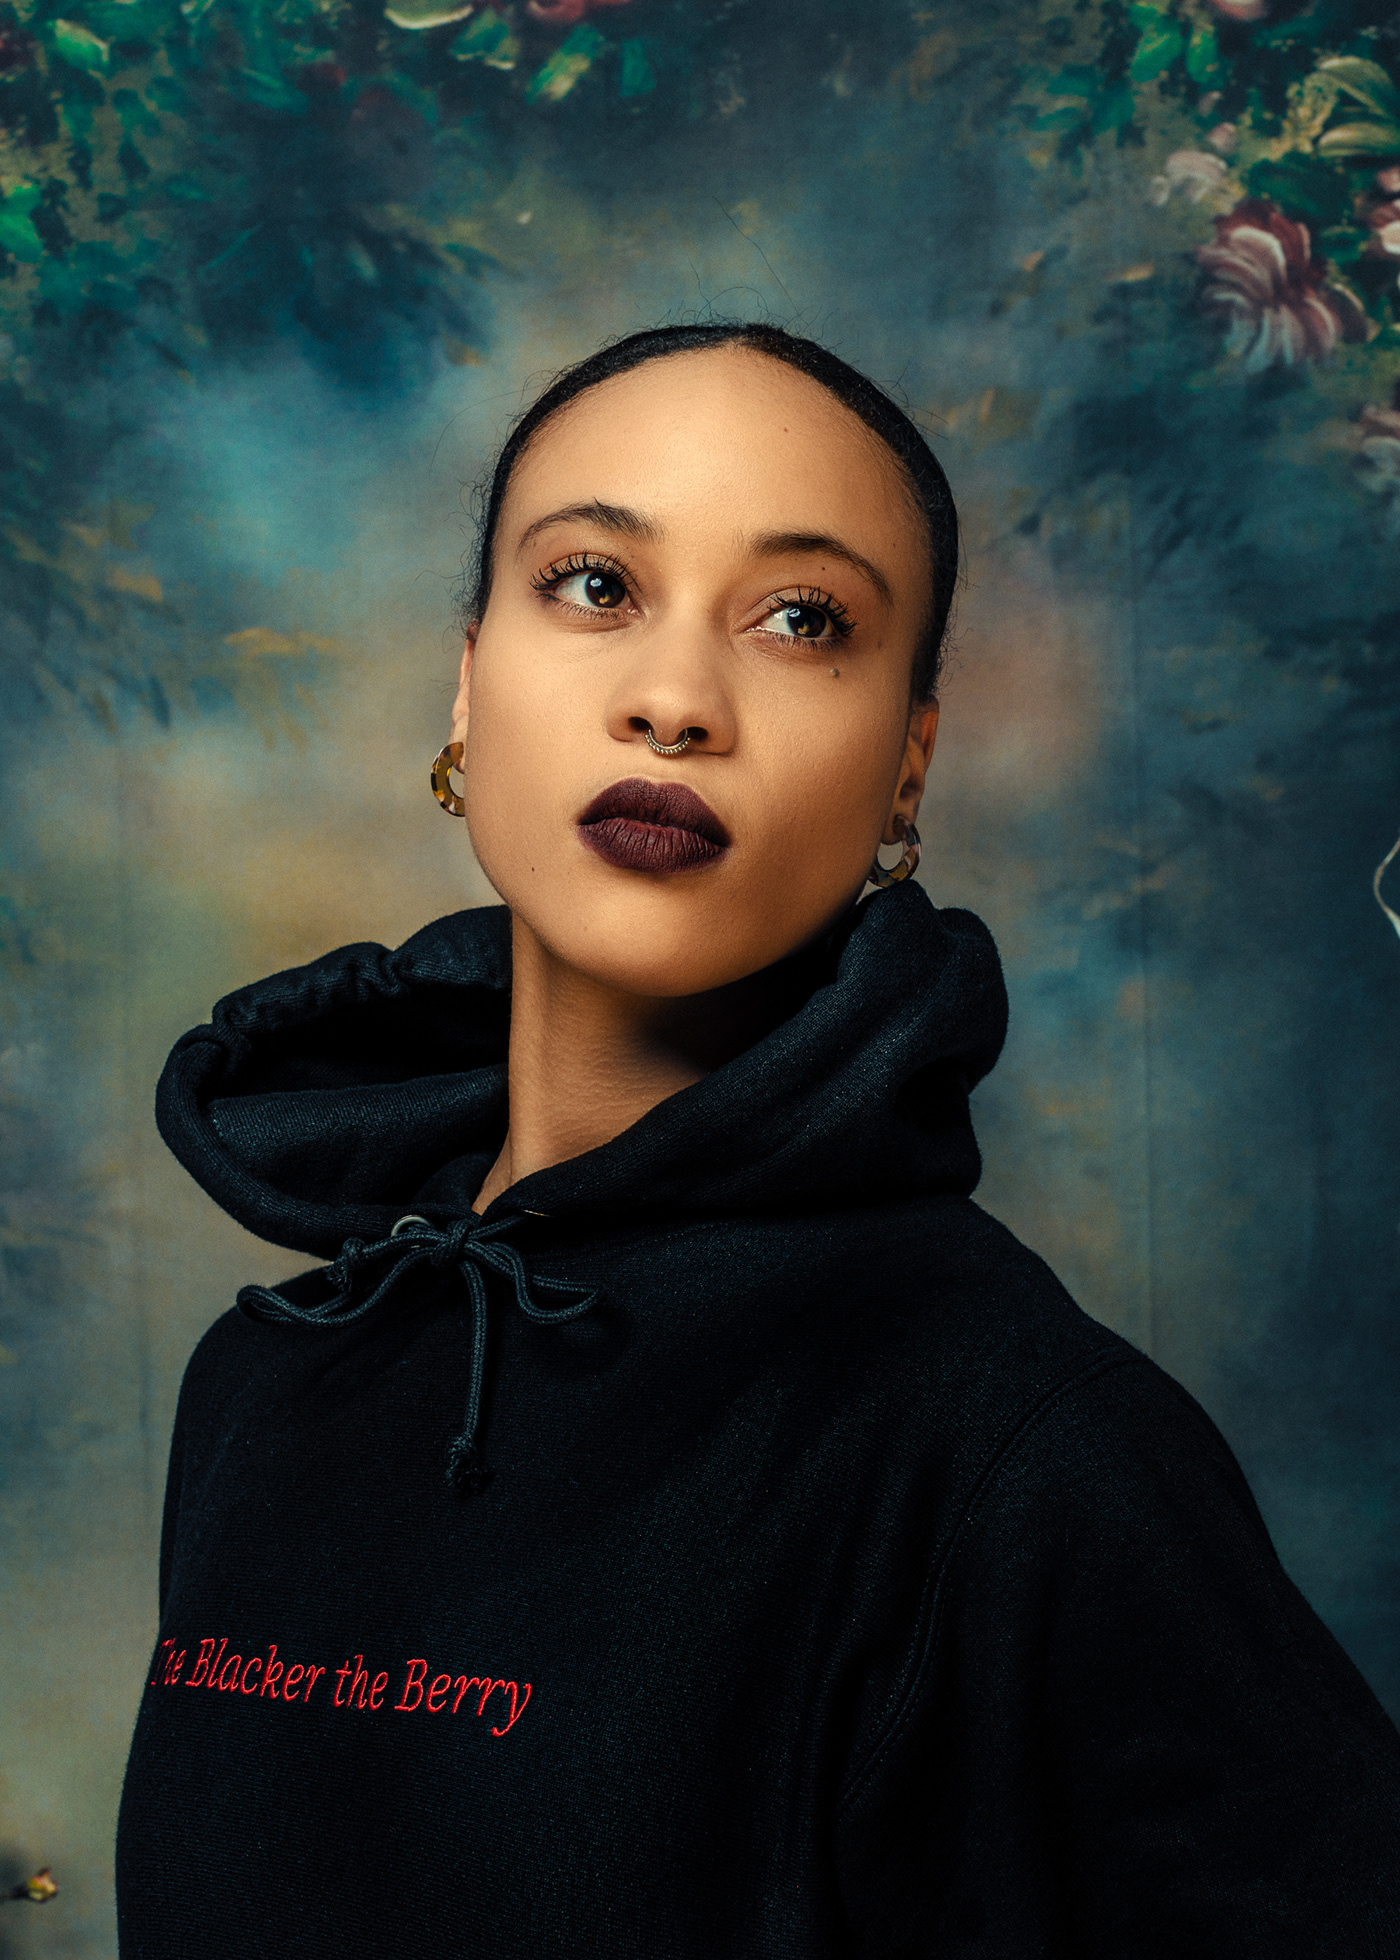 black contemporary art culture fashion design floral hip hop kendrick lamar Portraiture Renaissance tupac